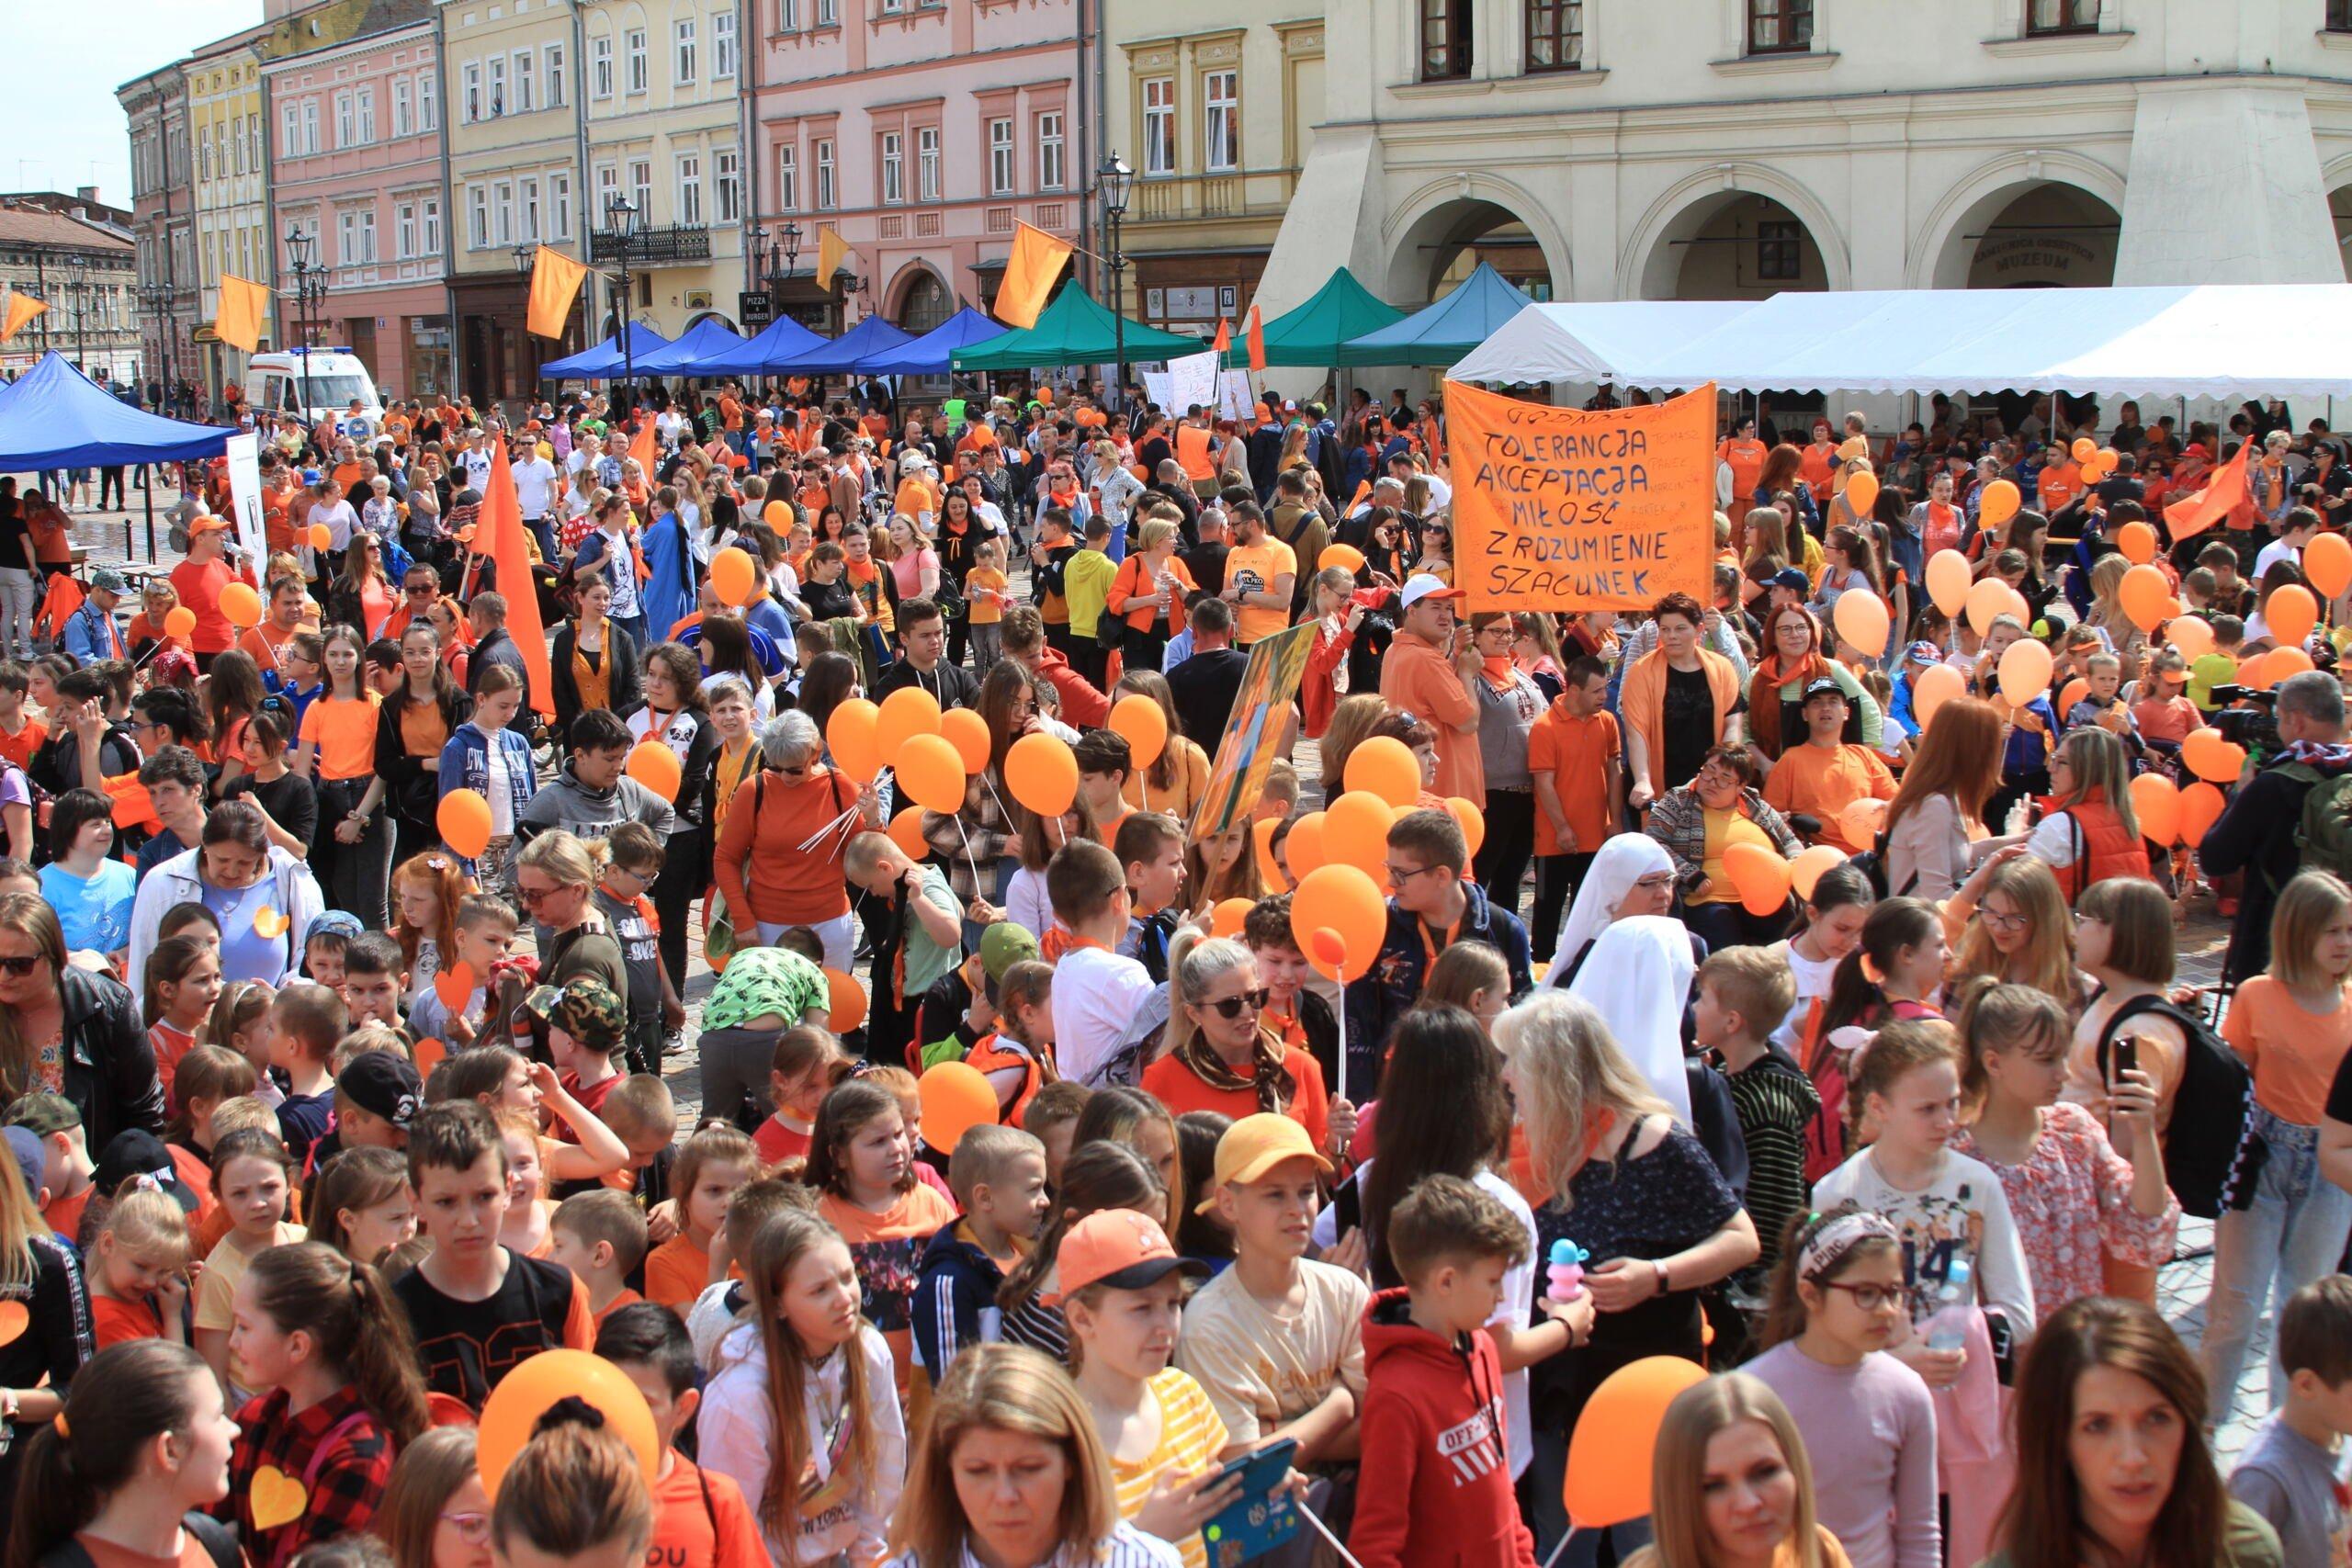 Tłum ludzi, w tym dzieci, z pomarańczowymi balonikami. W tle zabytkowe kamienice